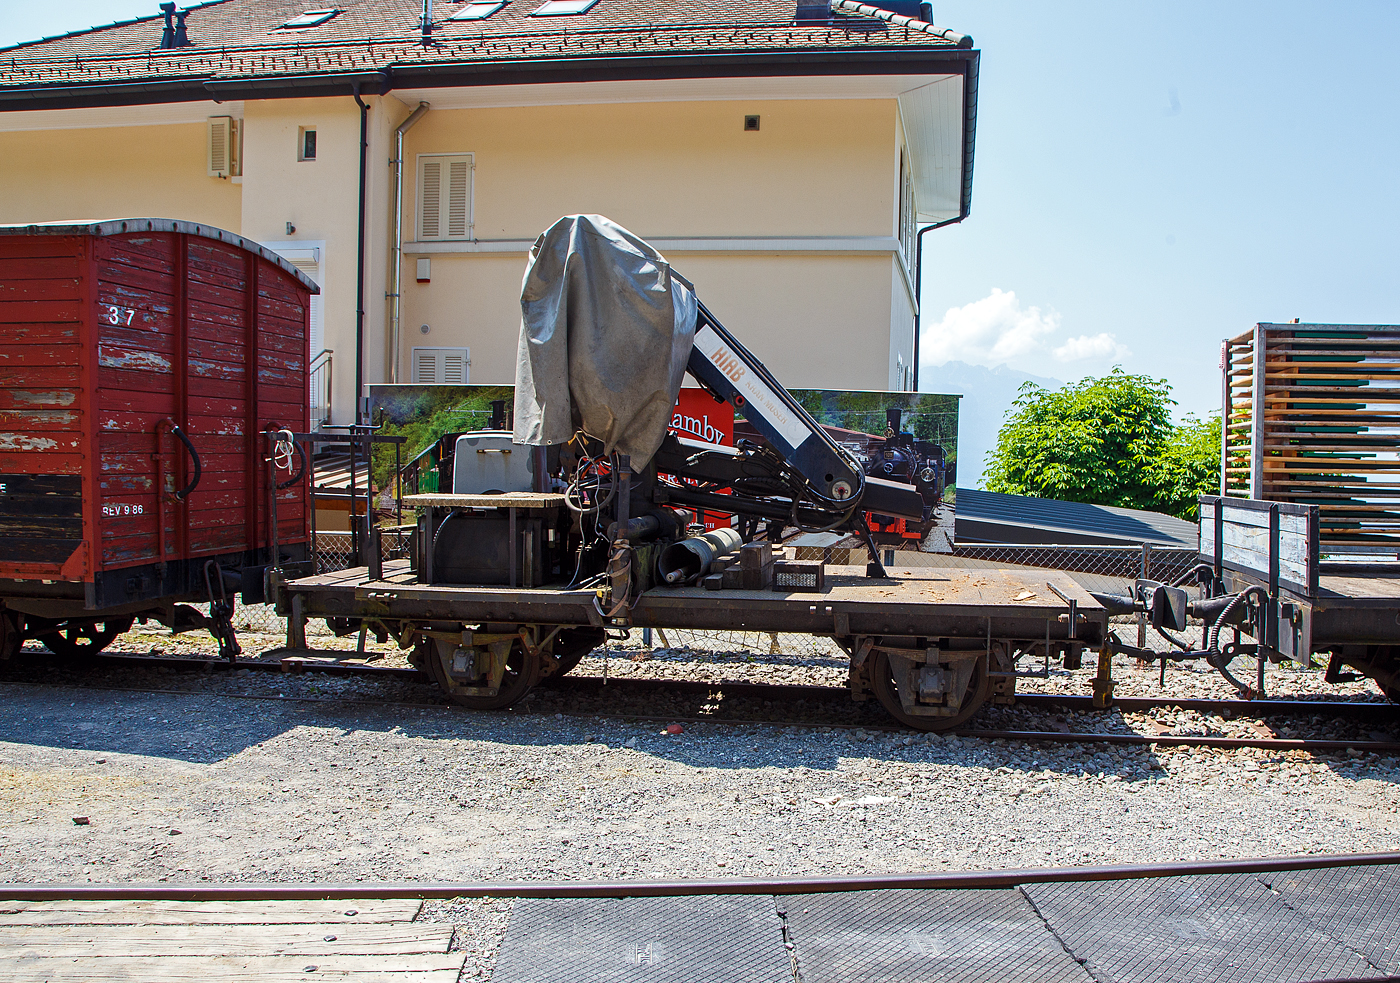 Der zweiachsige Kranwagen X52 der Museumsbahn Blonay-Chamby, ex LLB M 52 (Leuk-Leukerbad-Bahn, franzsisch Chemin de fer Loche-Loche-les-Bains), abgestellt am 27. Mai 2023 beim Bahnhof Chamby.

Der zweiachsige Wagen wurde als Flachwagen wurde 1915 von SWS Schlieren (Schweizerische Wagons- und Aufzgefabrik AG) fr die Leuk-Leukerbad-Bahn (LLB) gebaut. Nach Einstellung der Bahn 1967 ging er an die BC und wurde 2008 von der Museumsbahn B-C zum Kranwagen X52 umgebaut.
